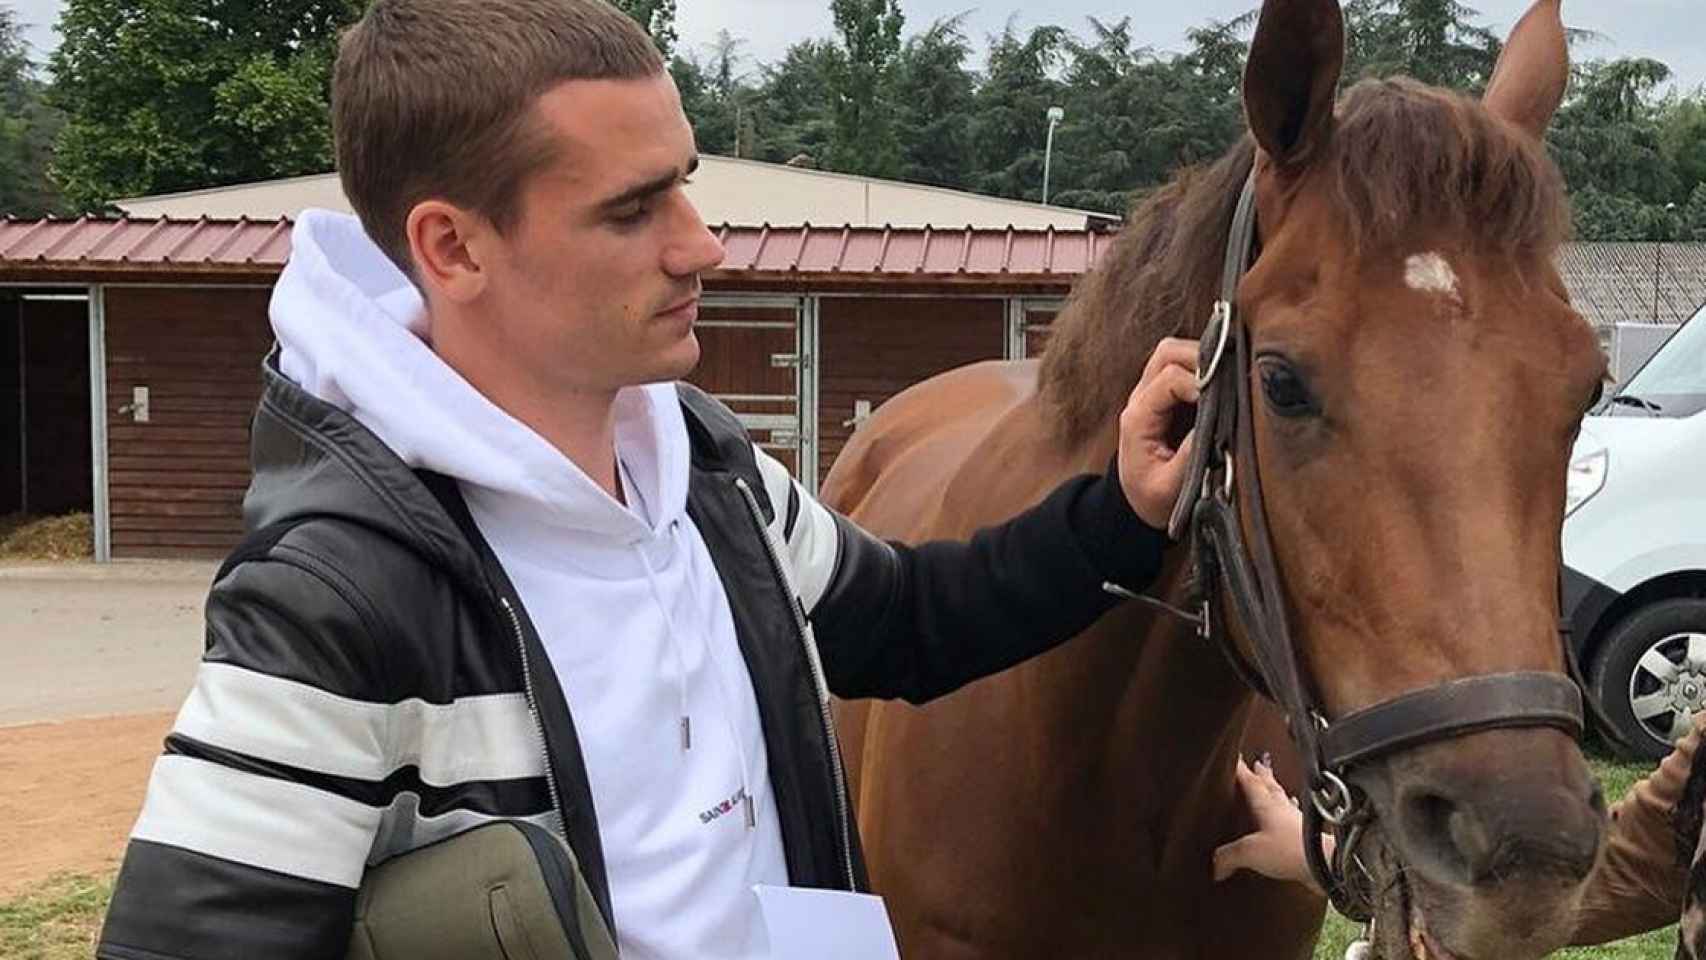 Griezmann con uno de los caballos de su yeguada